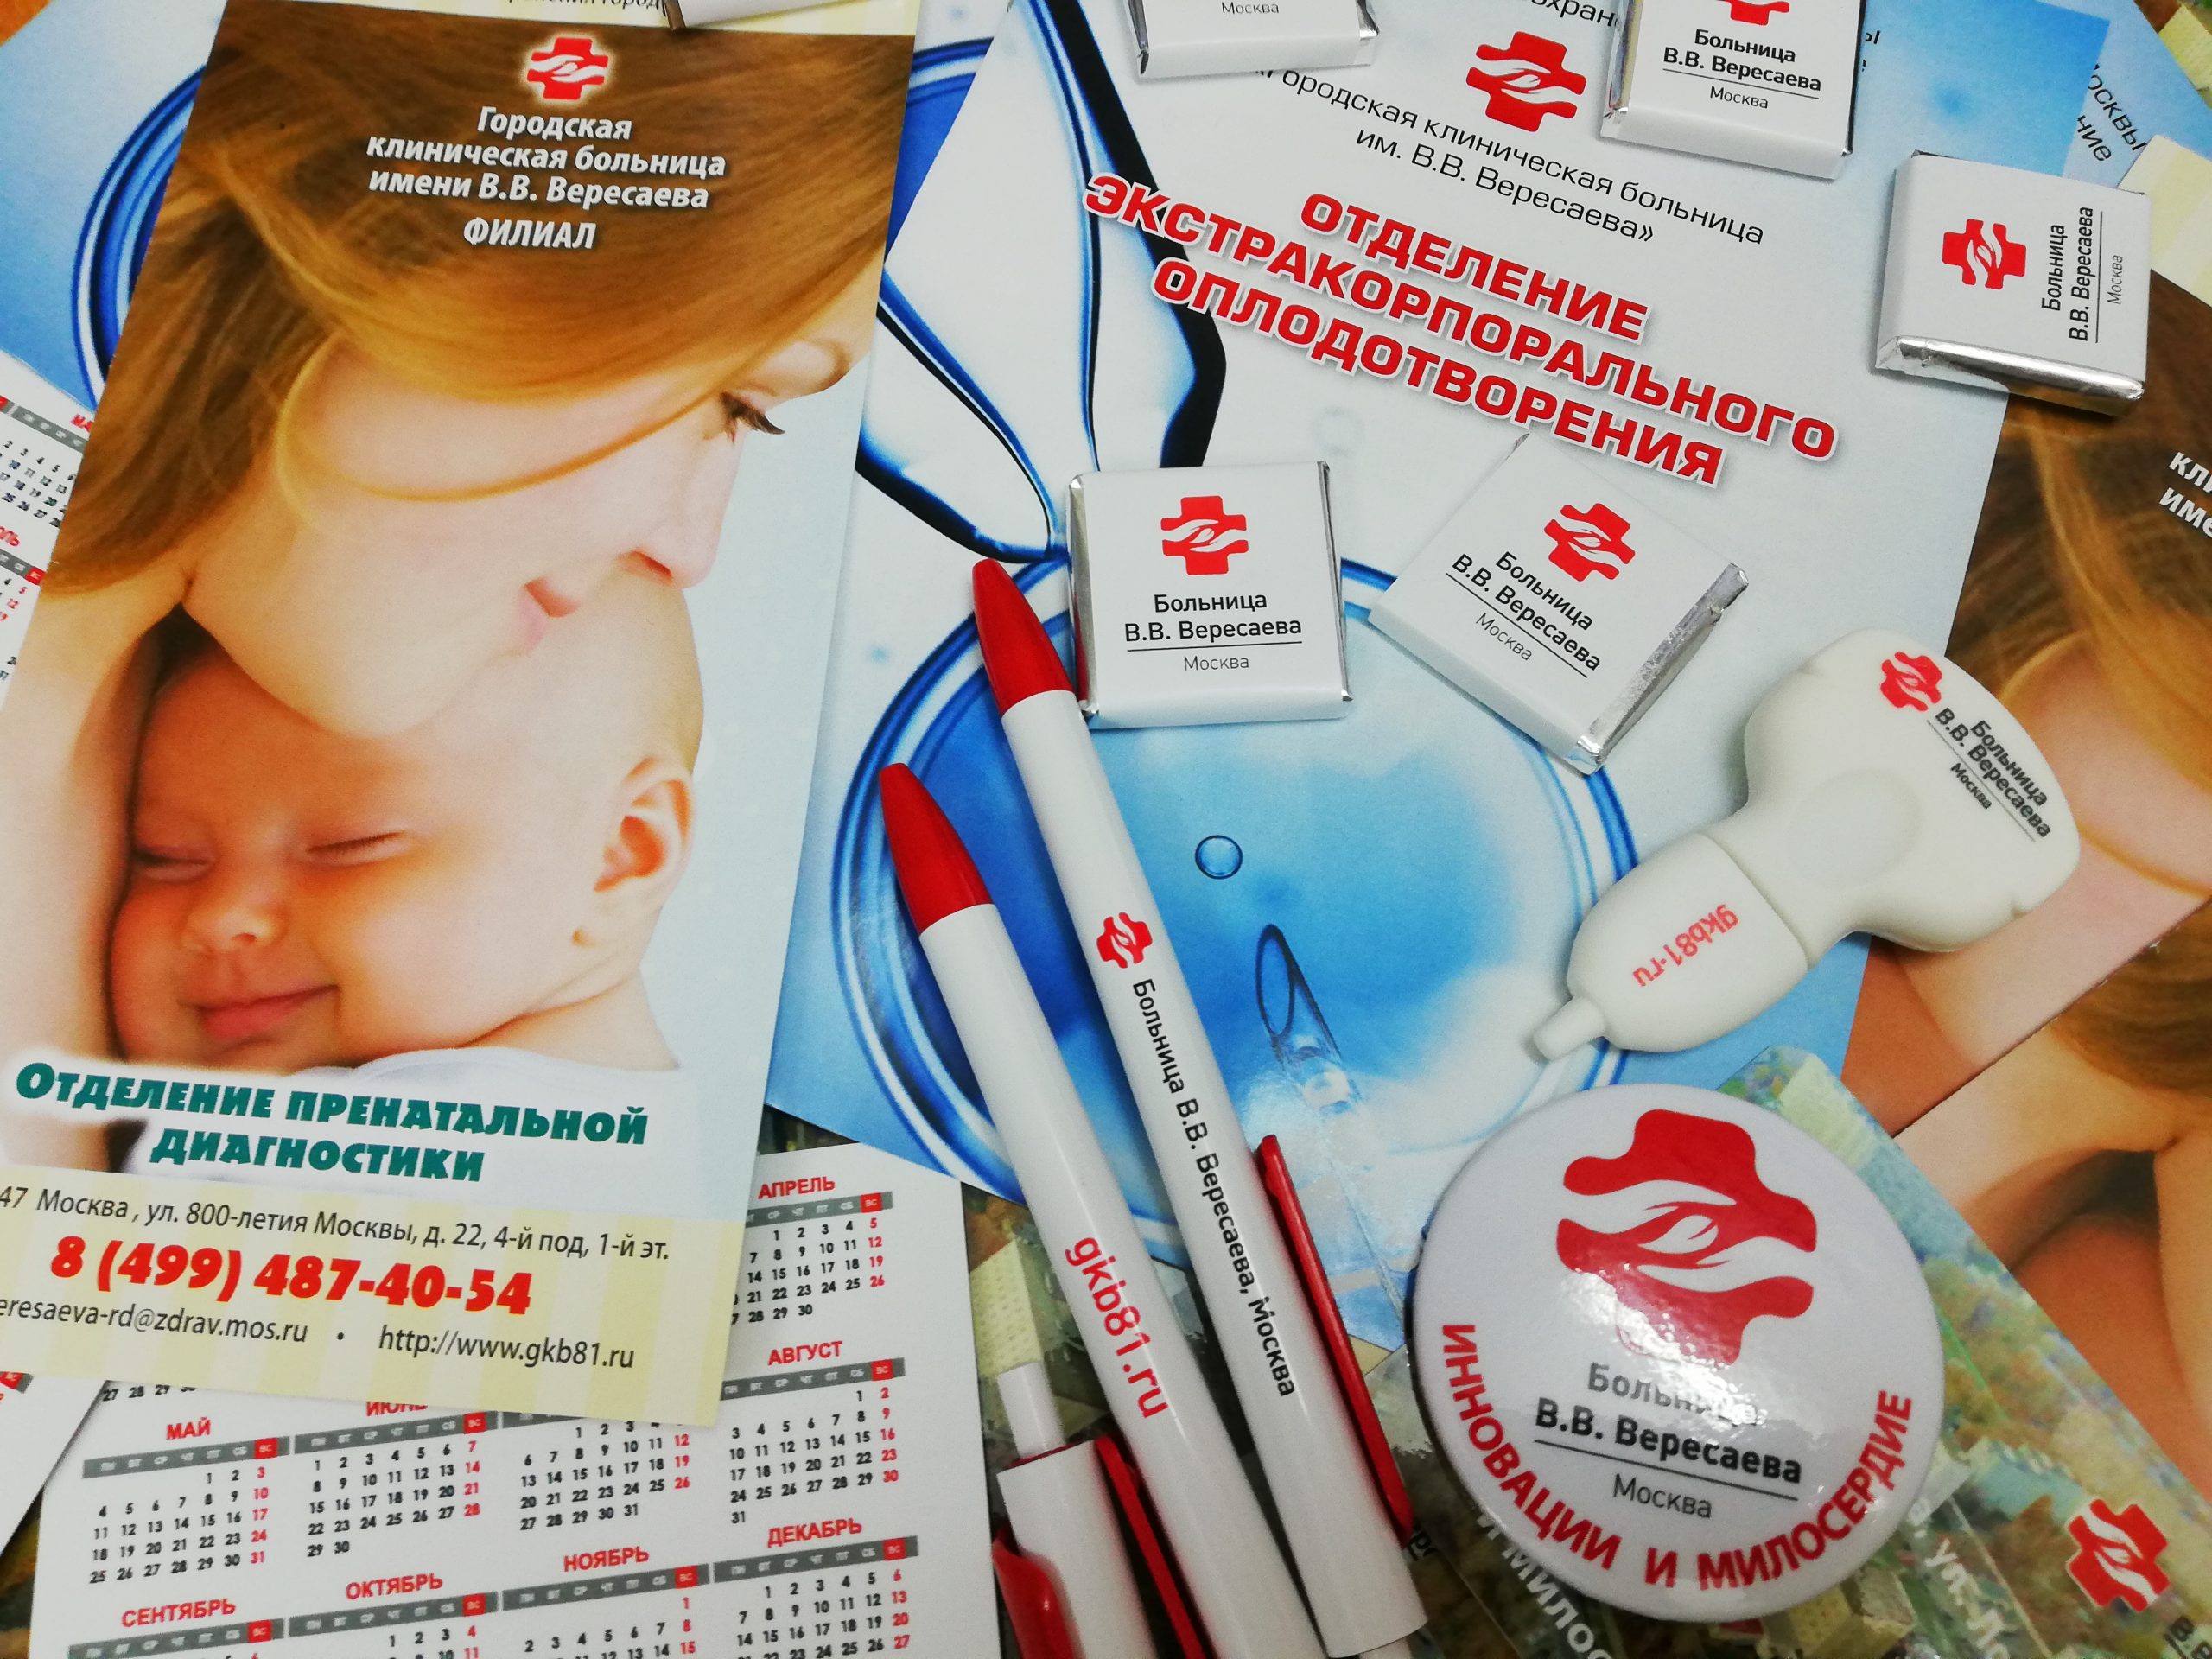 В XVIII ассамблее «Здоровая Москва» примут участие специалисты больницы Вересаева